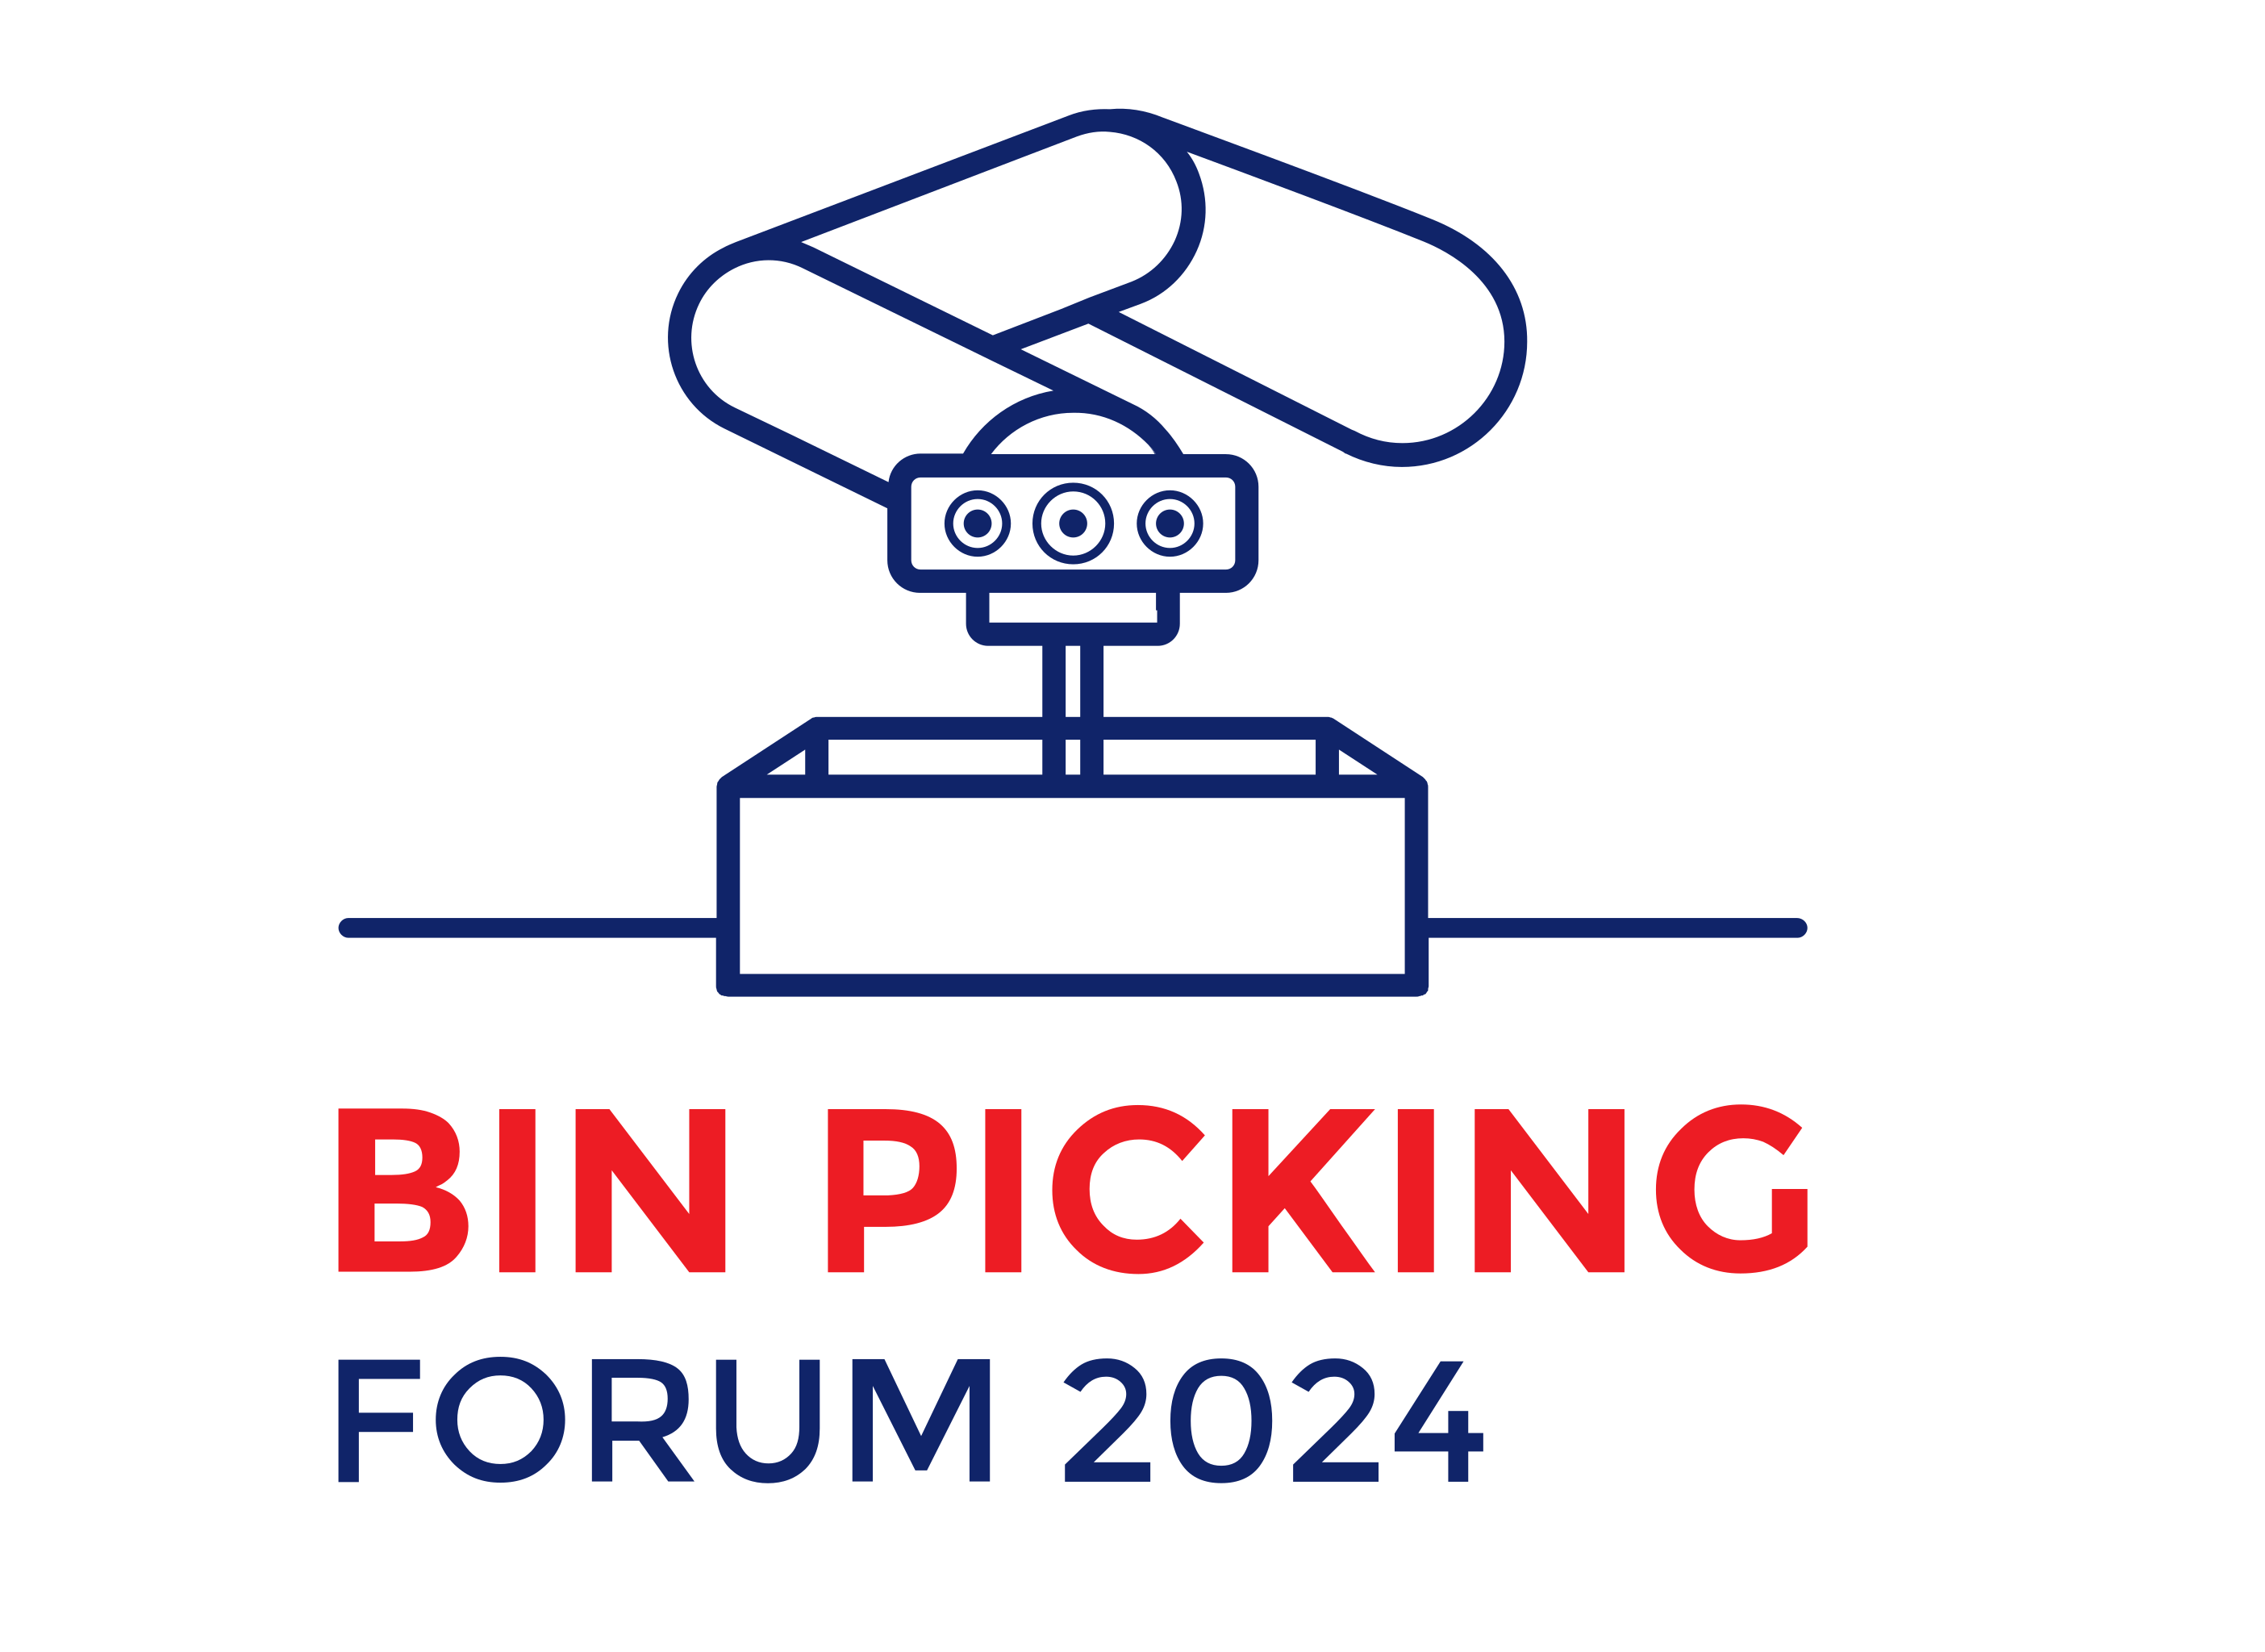 Bin Picking Forum